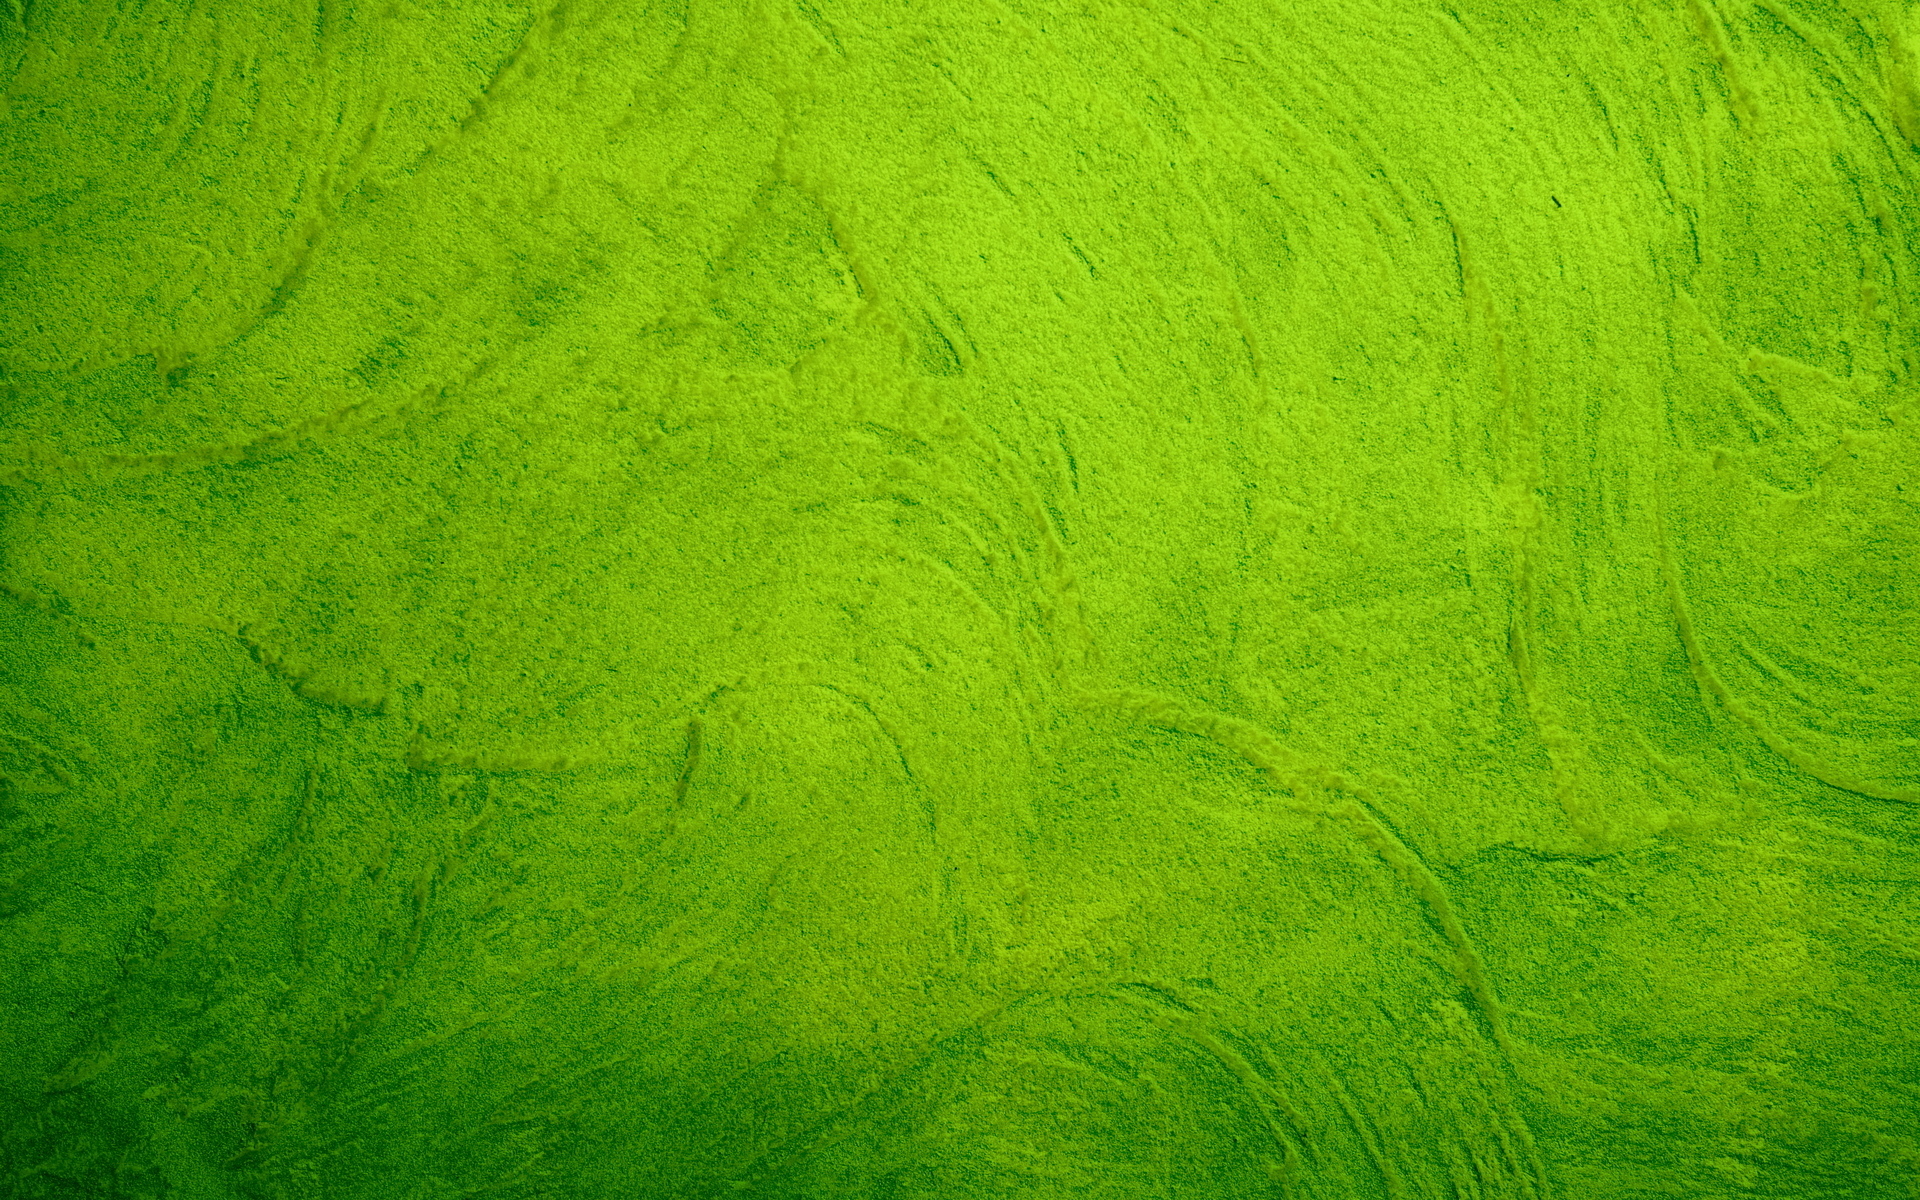 зеленая краска, текстура краски, фон, скачать фото, green paint texture background